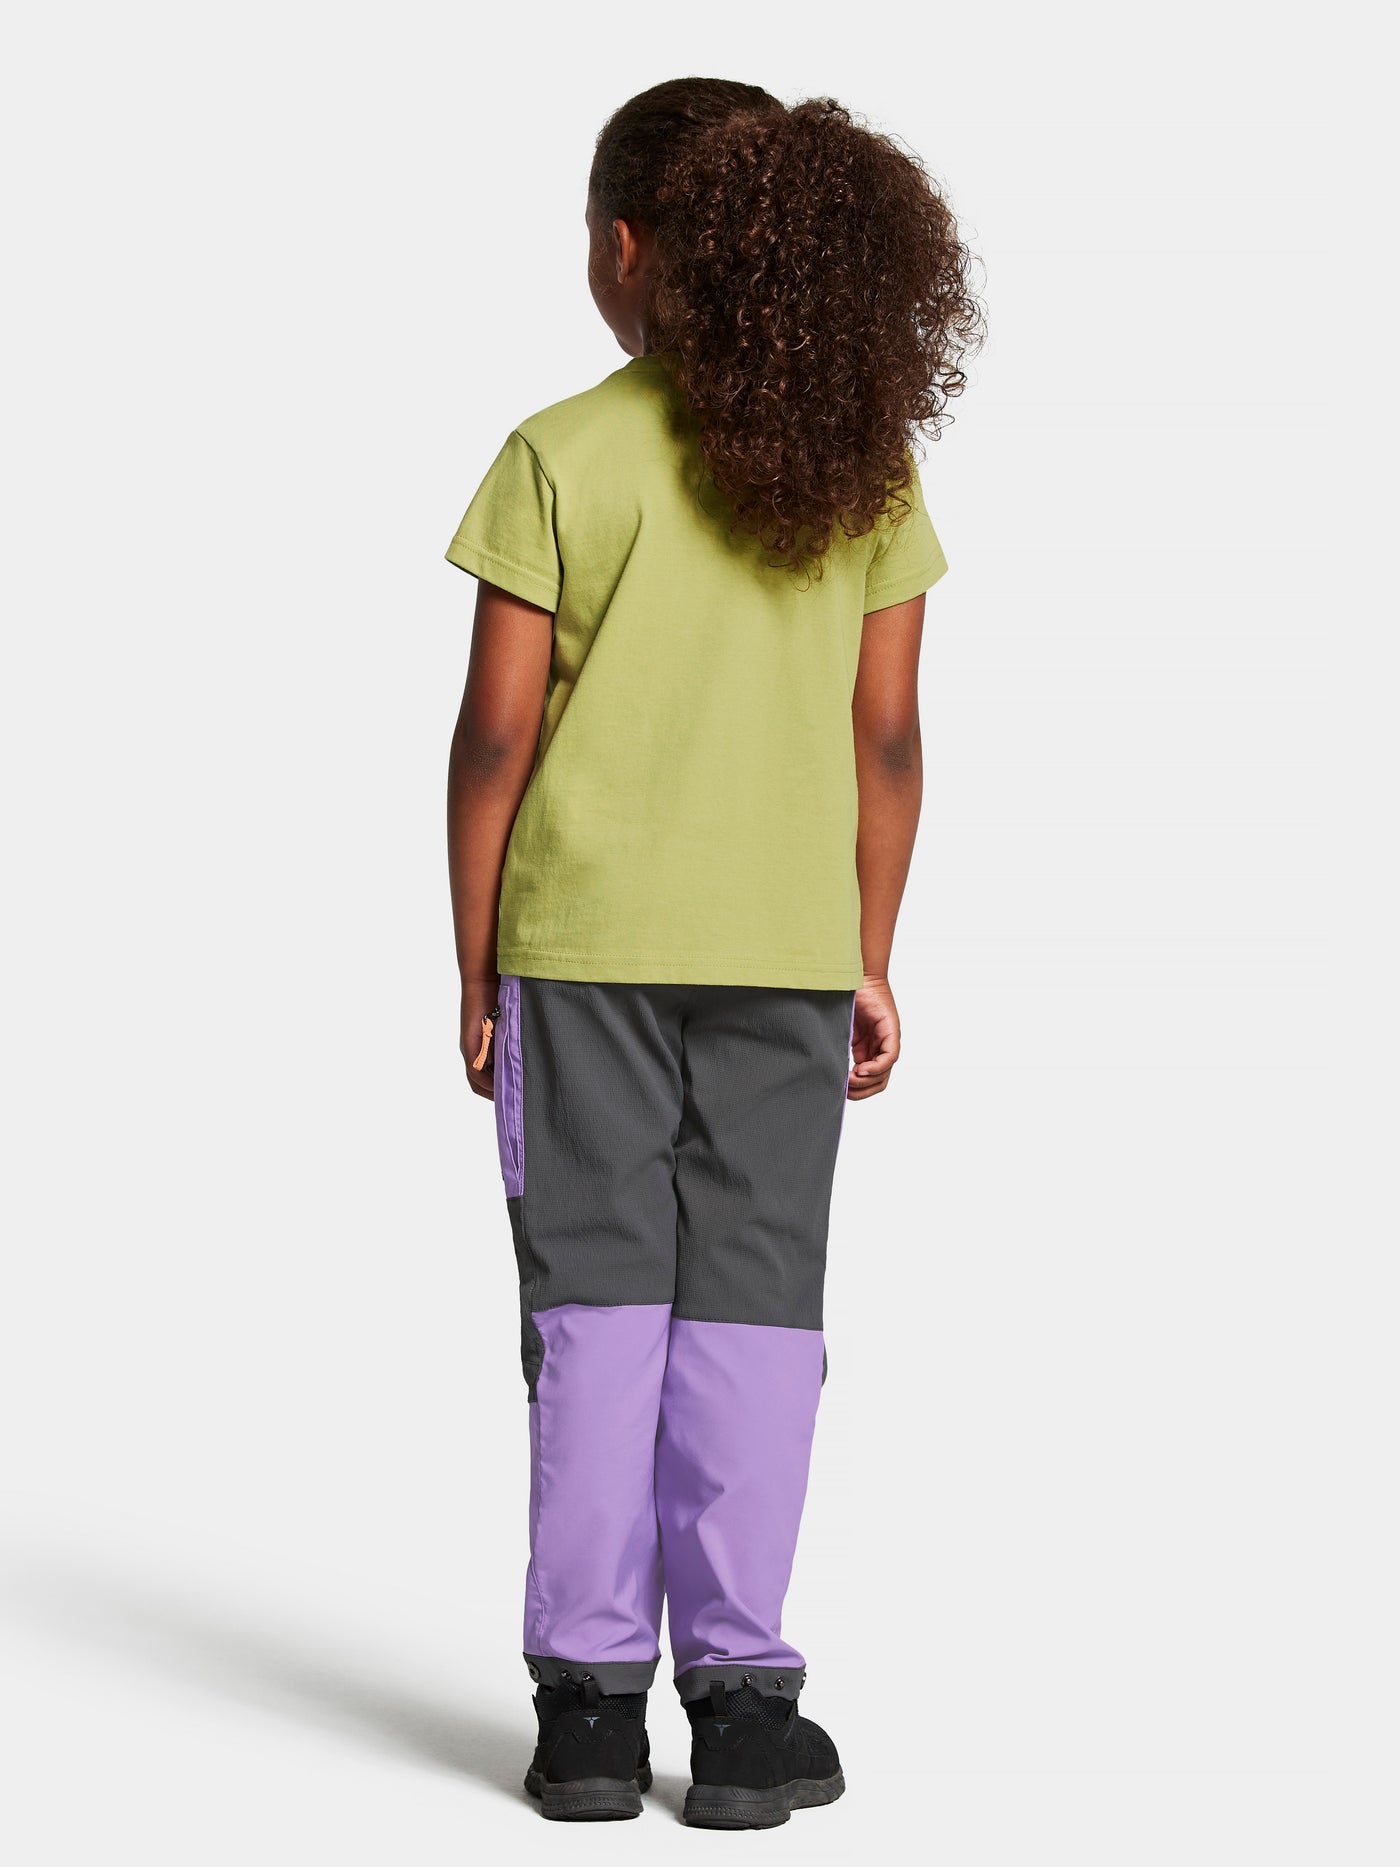 Didriksonsin lasten ja nuorten Mynta logo t-paita vaaleanvihreässä sävyssä tytön päällä takaa kuvattuna